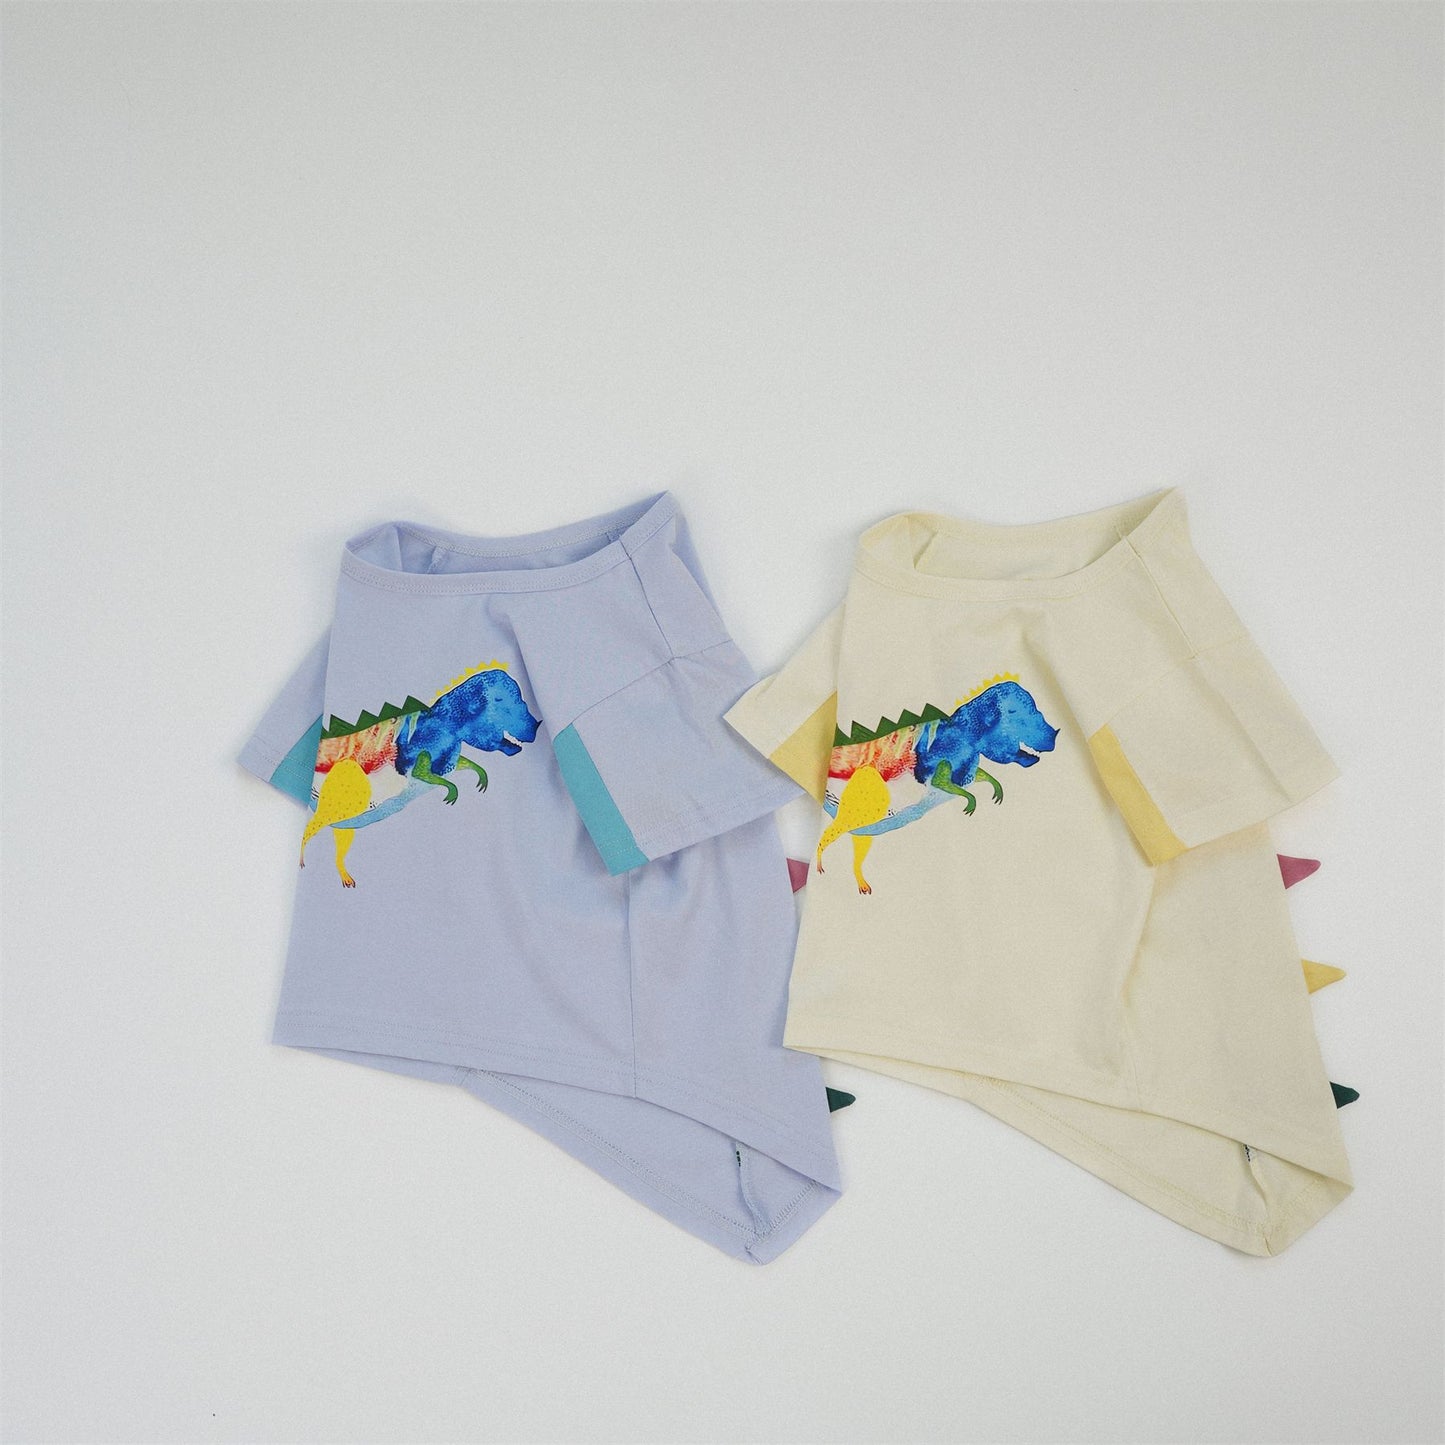 【S4042635】夏季款 兒童恐龍短袖T恤 純棉 拼色 寬鬆韓版T恤 寶寶圓領上衣-2色